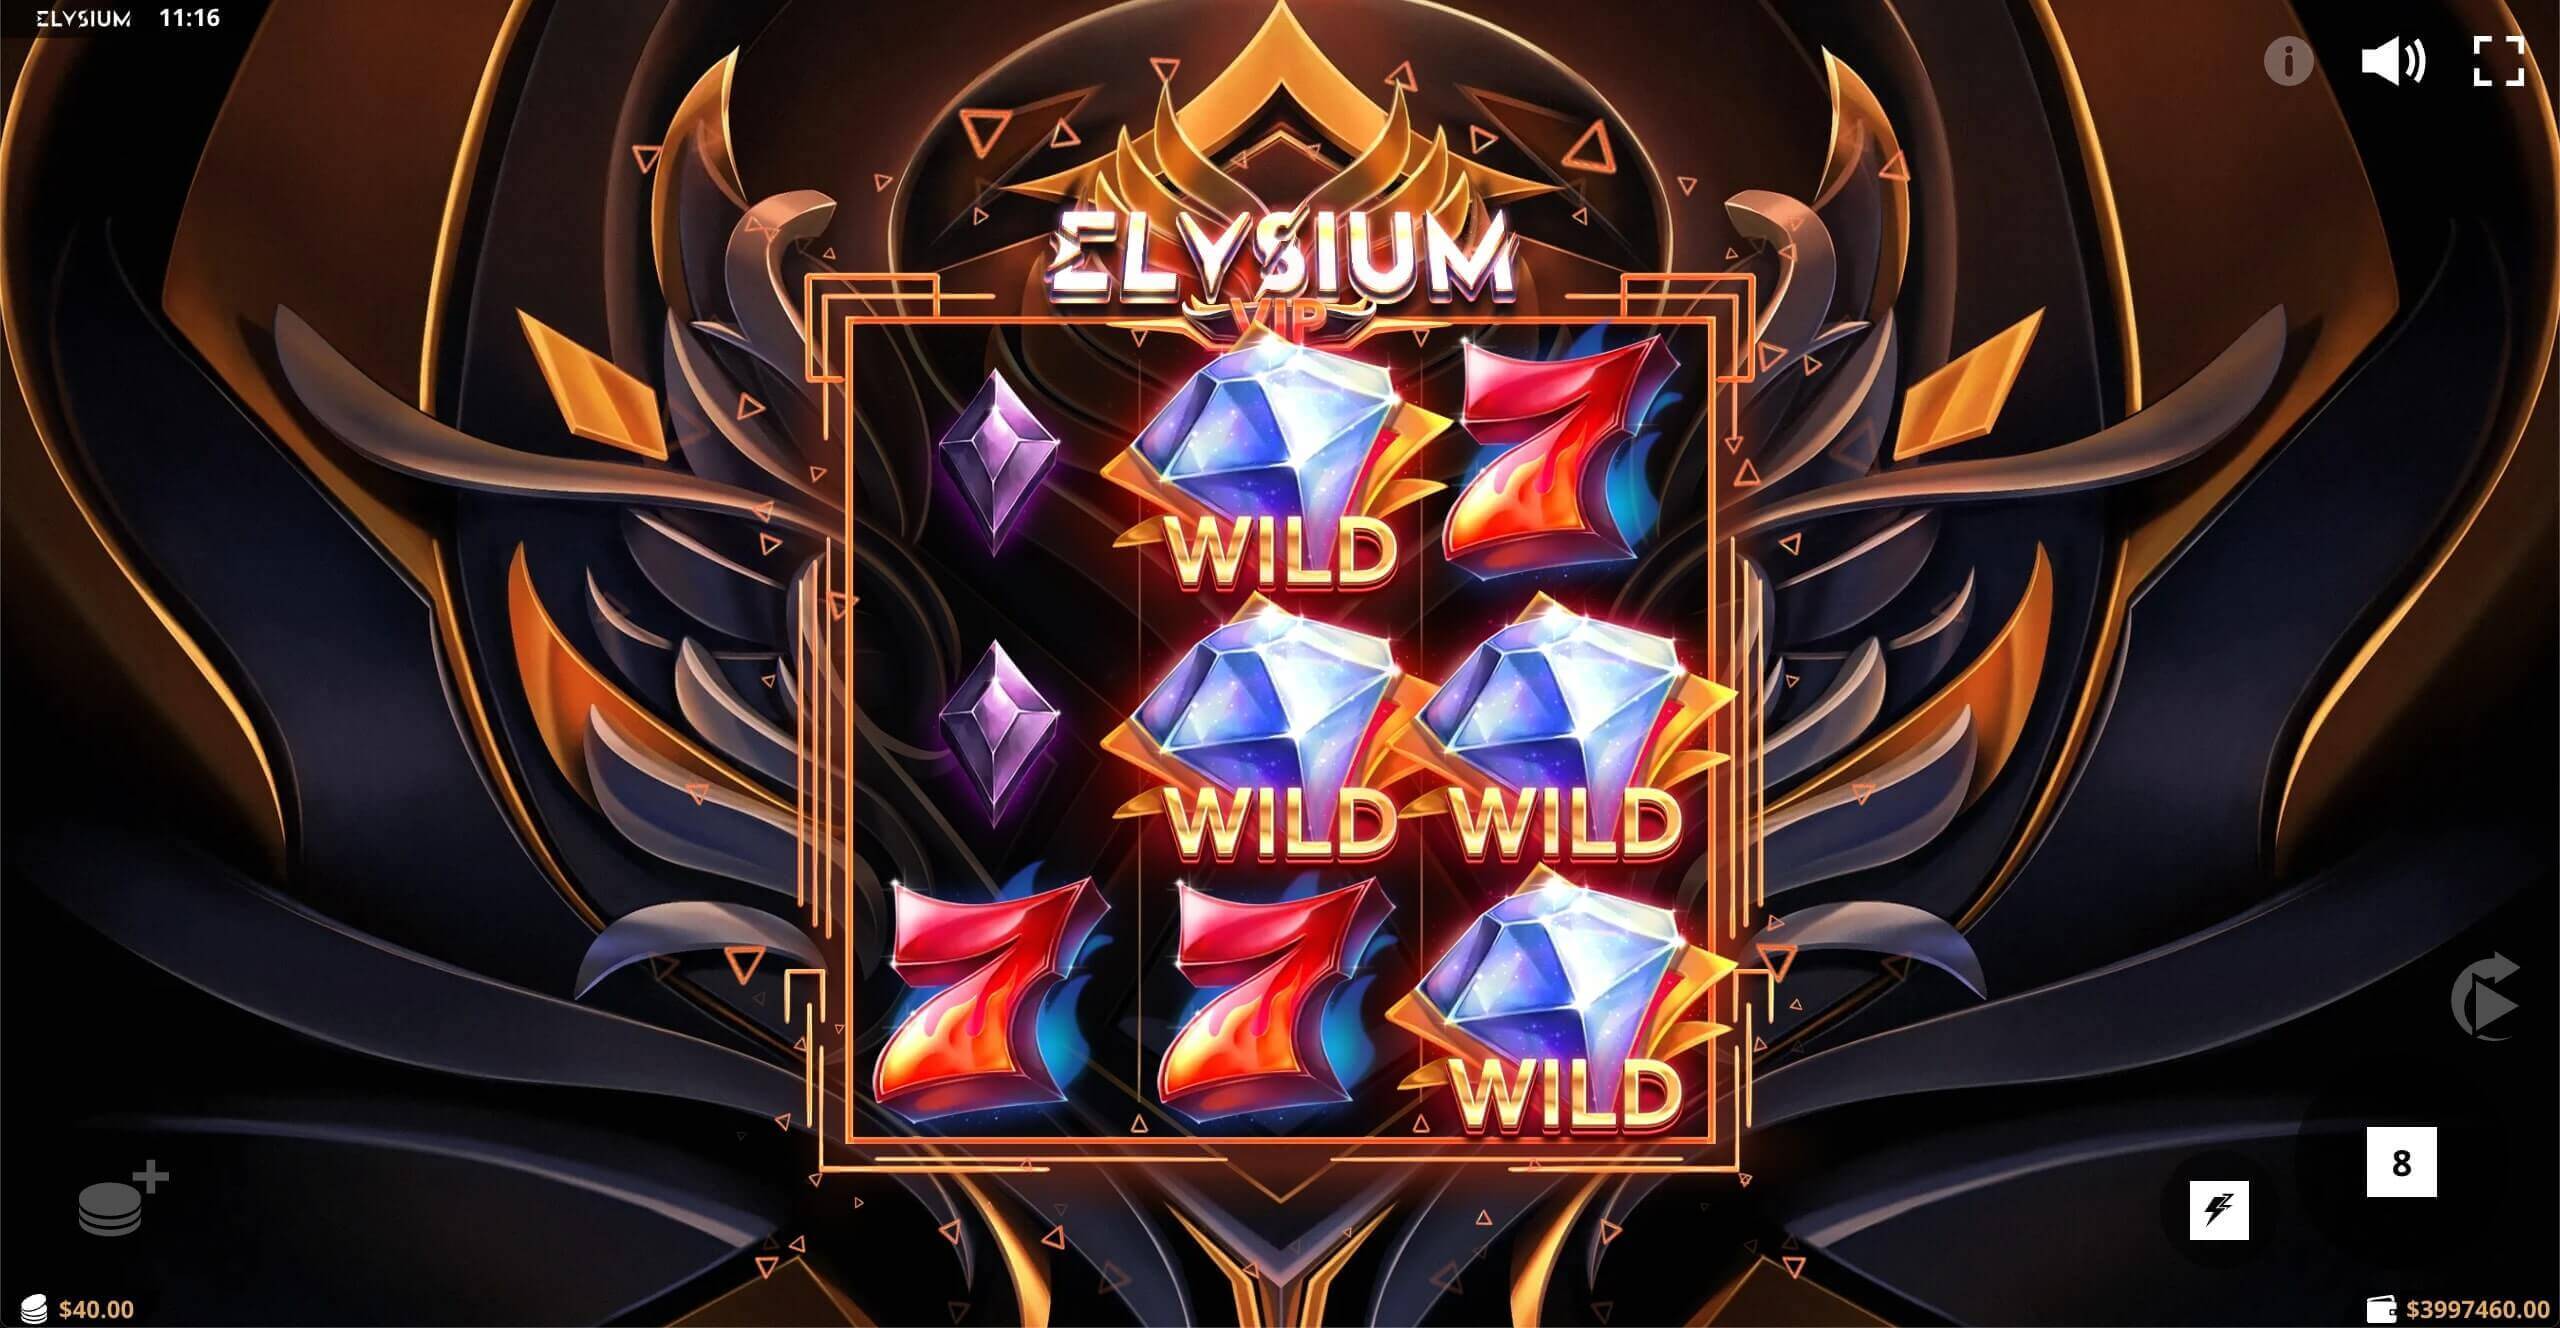 Elysium VIP